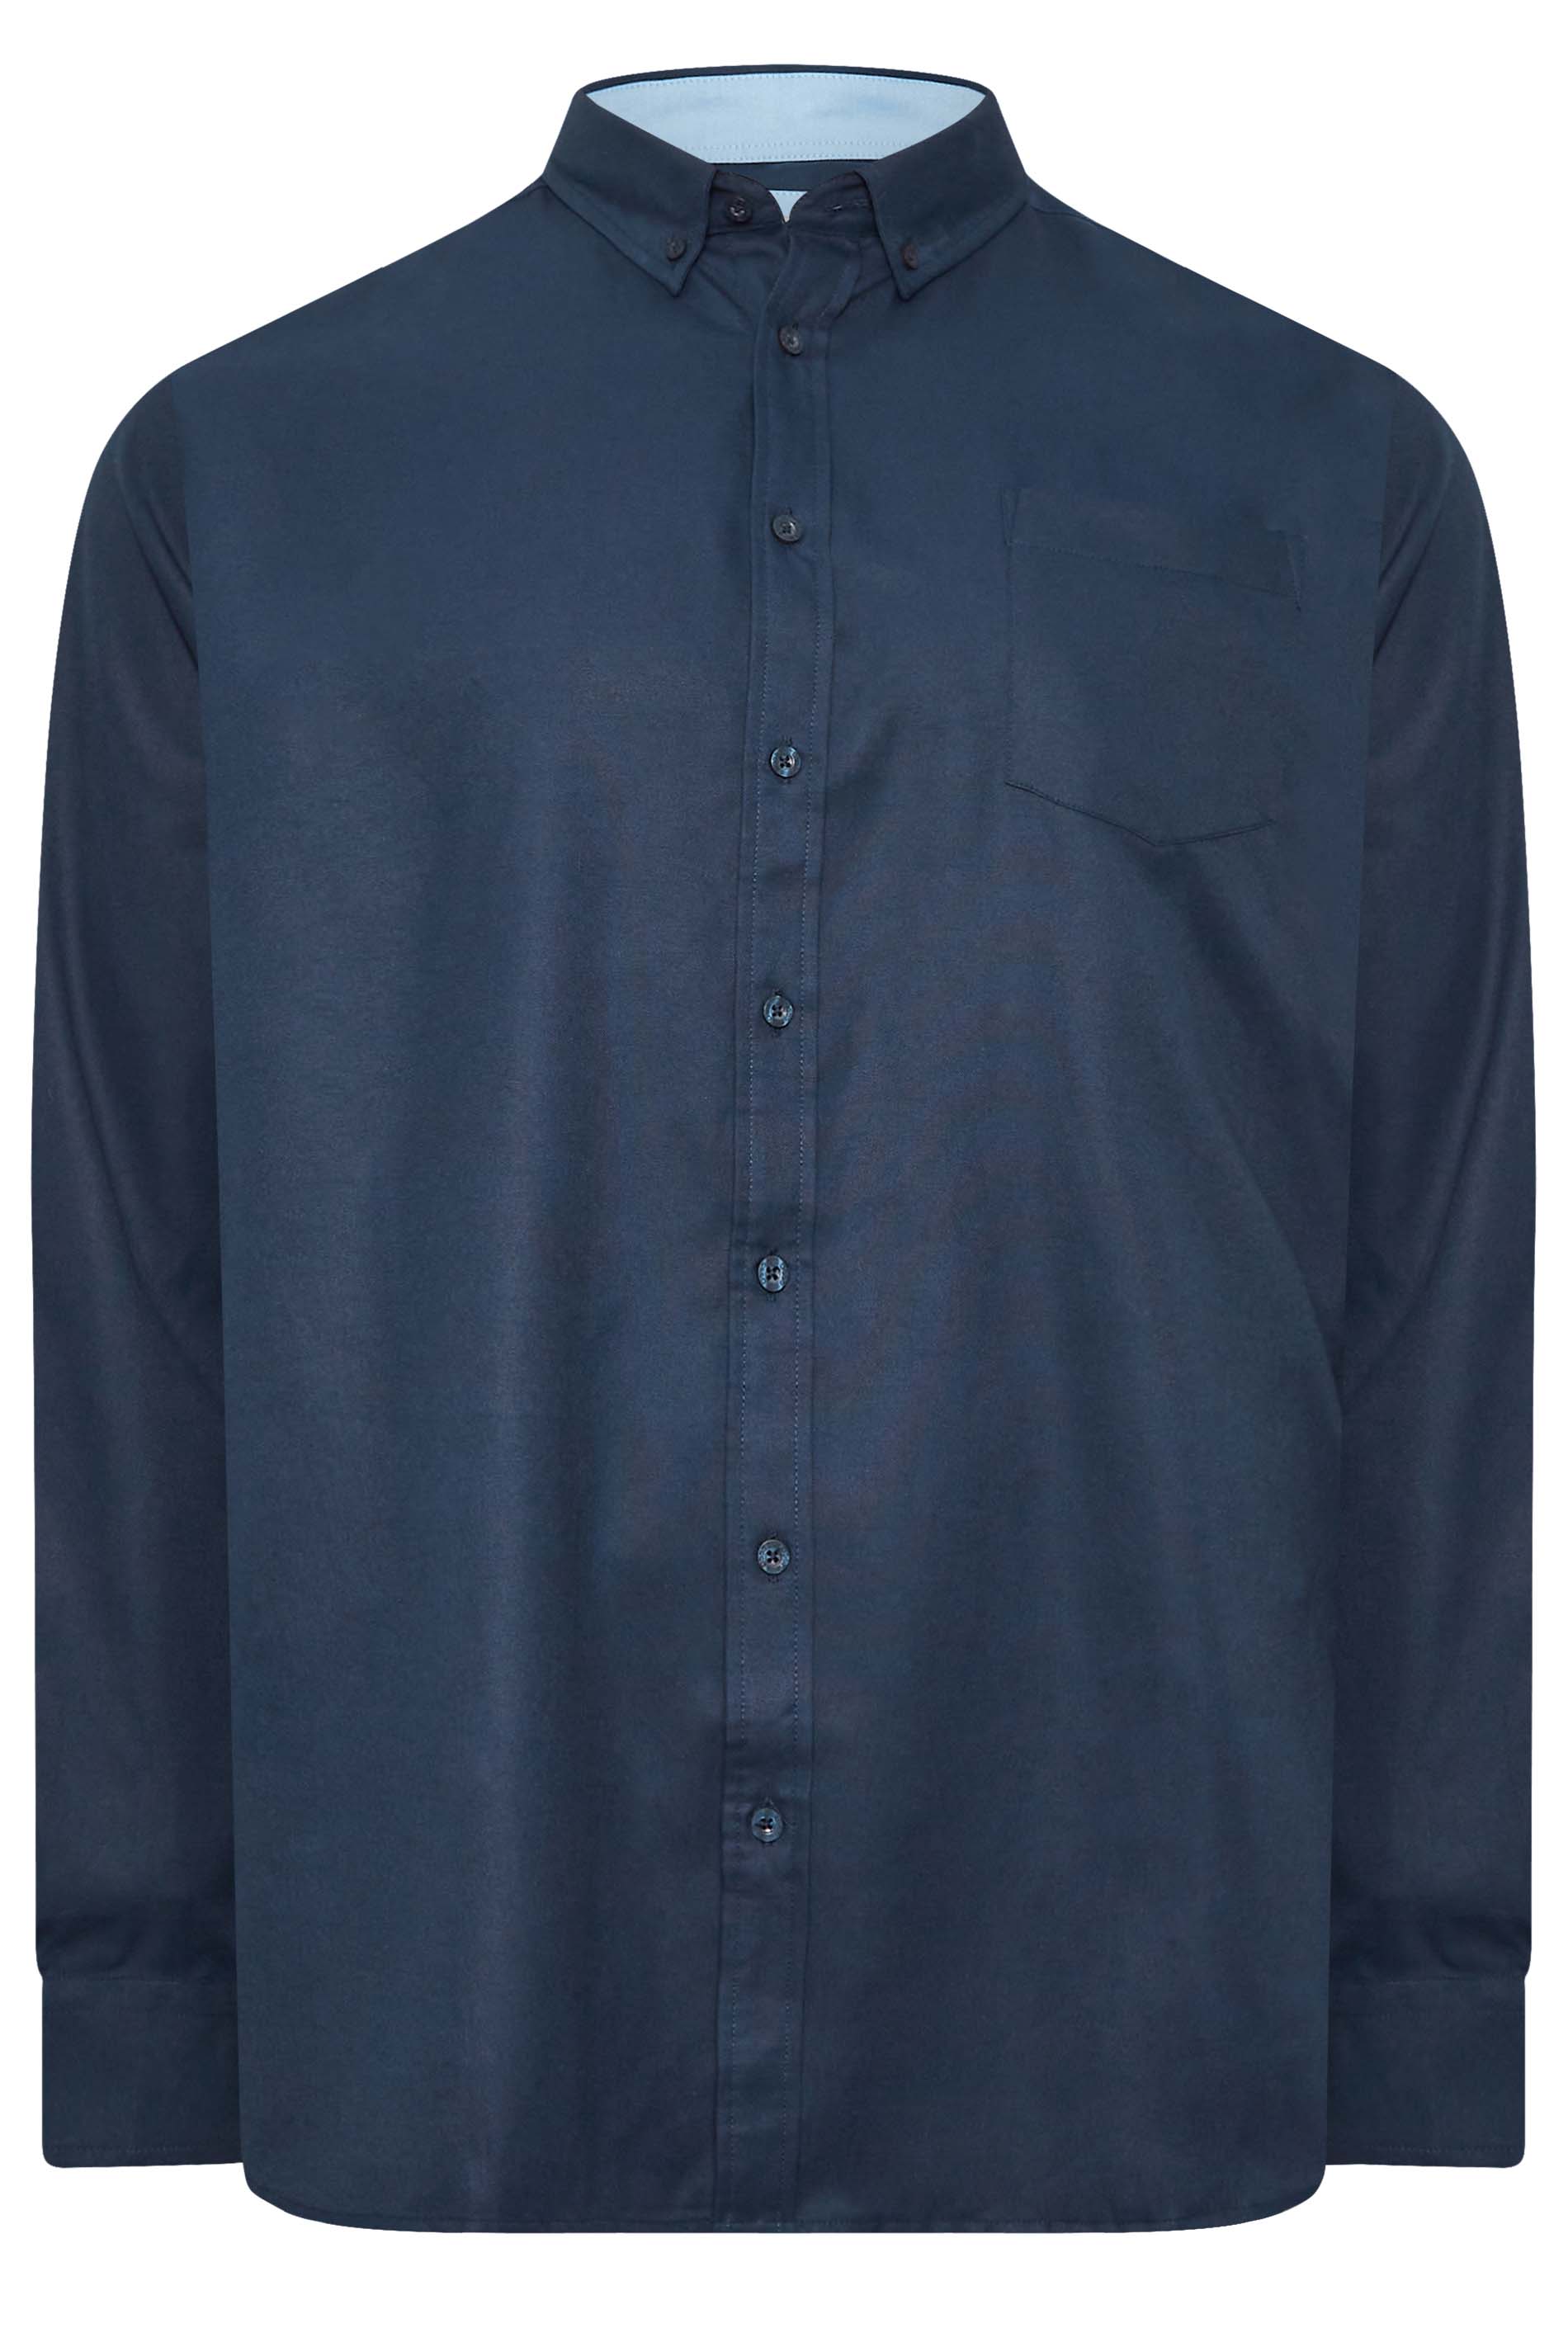 D555 Big & Tall Navy Blue Long Sleeve Oxford Shirt | BadRhino 3